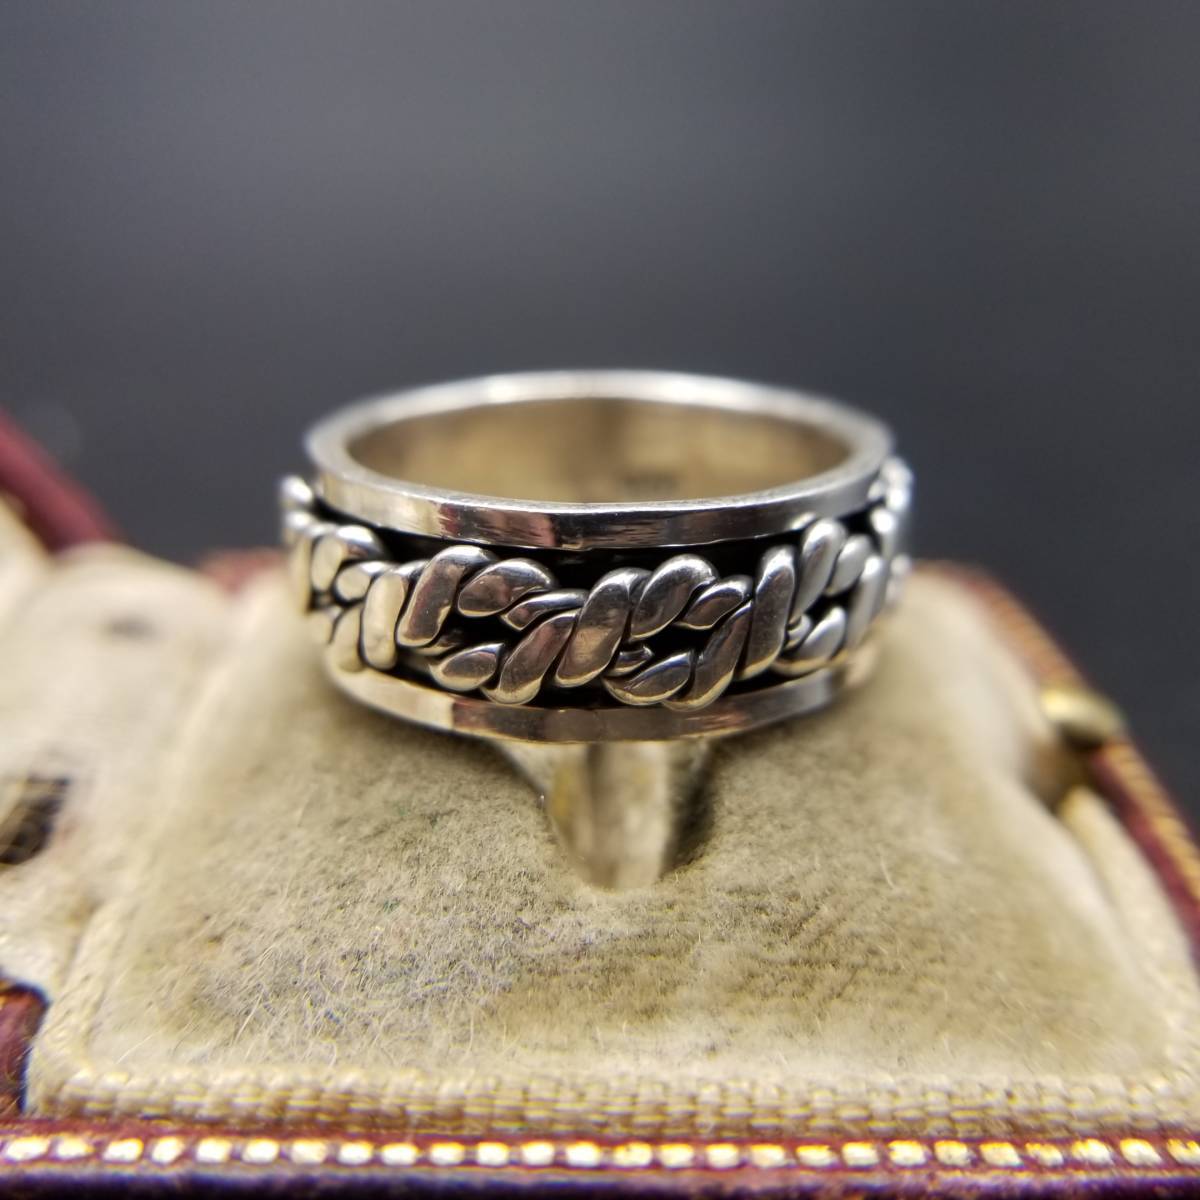  трос цепь узор частота кольцо 925 серебряный Vintage кольцо 8.7g серебряный кольцо мужской ювелирные изделия средний futoshi R9-E